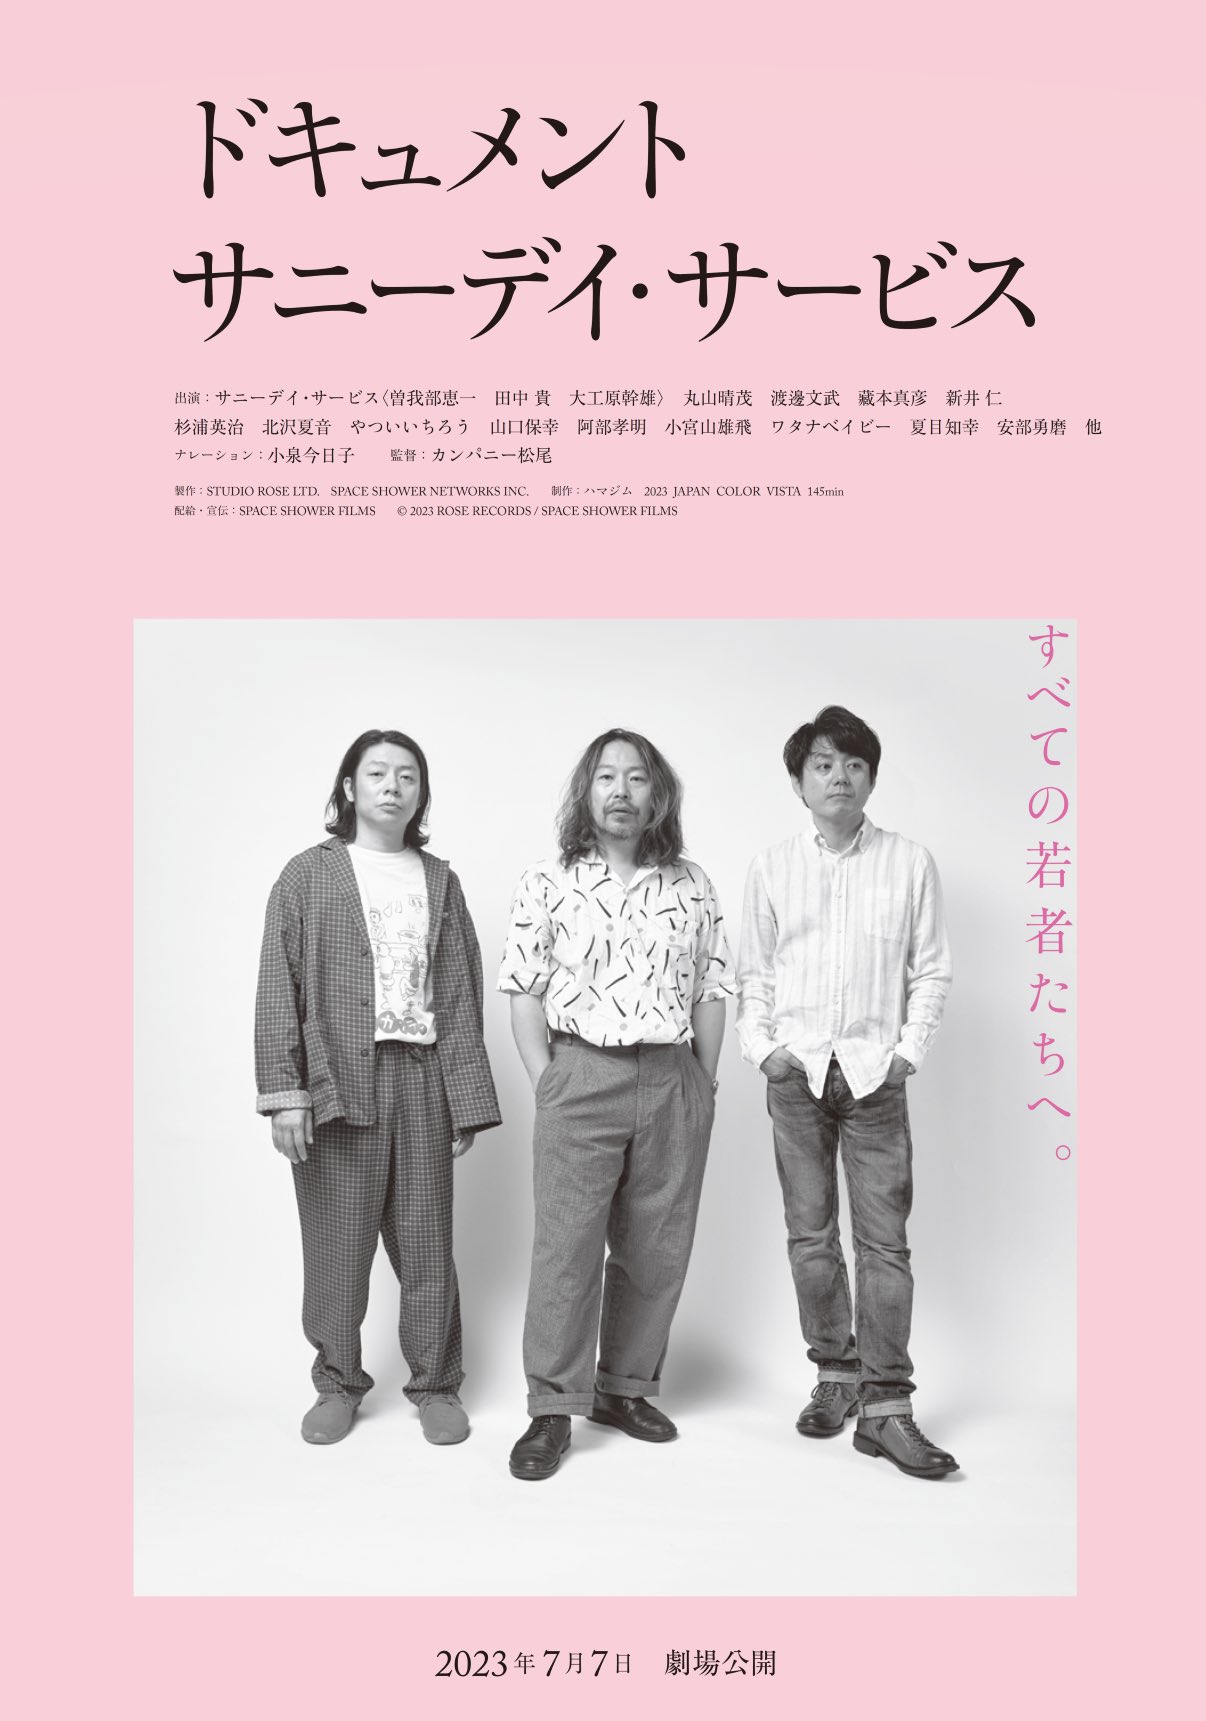 曽我部恵一 アナログ盤 LP「My Friend Keiichi」帯付！KEIICHI SOKABE ROSE RECORDS サニーデイ・サービス